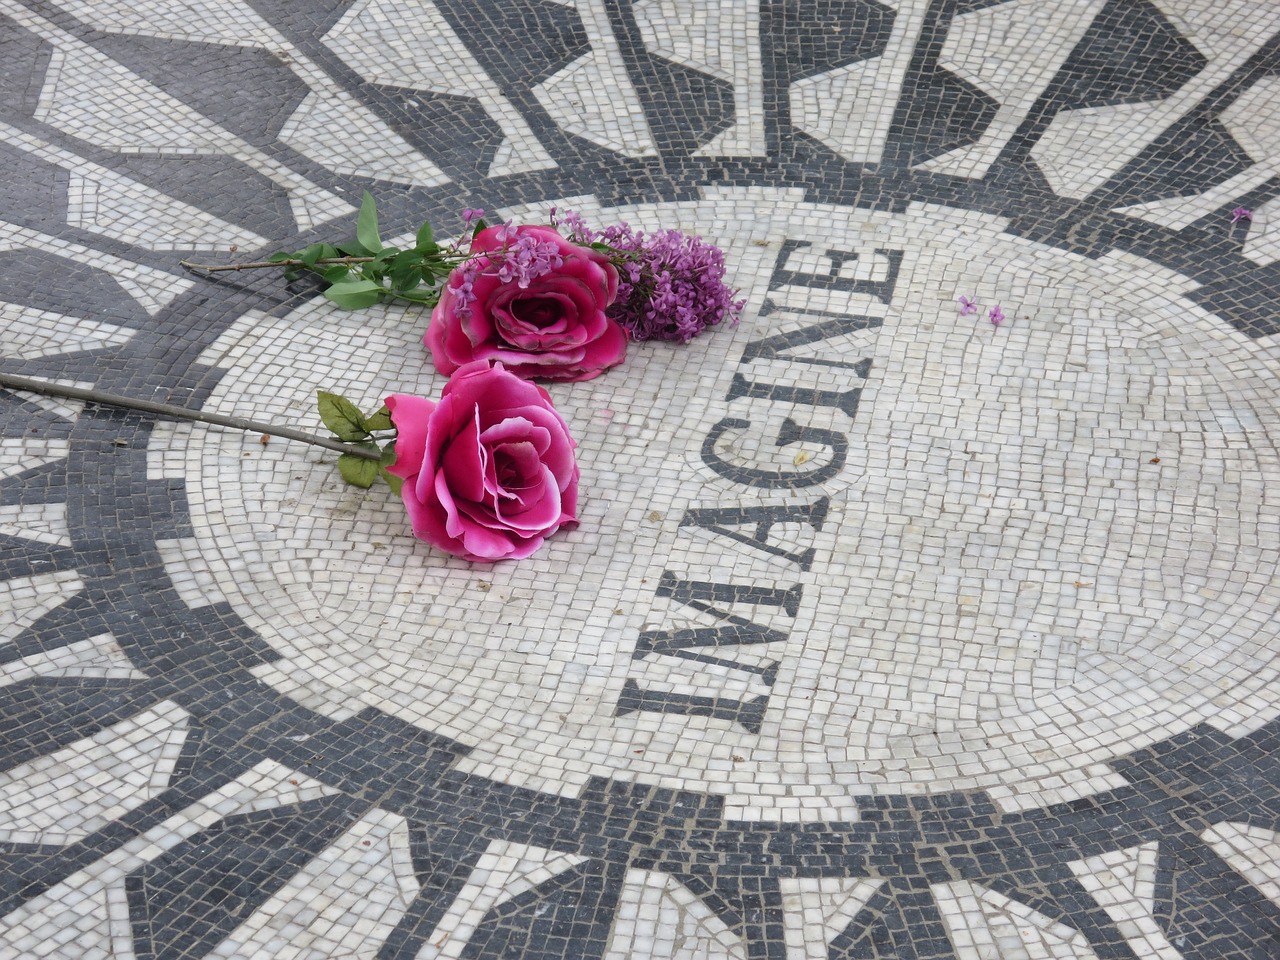 John Winston Lennon. “Imagine”.